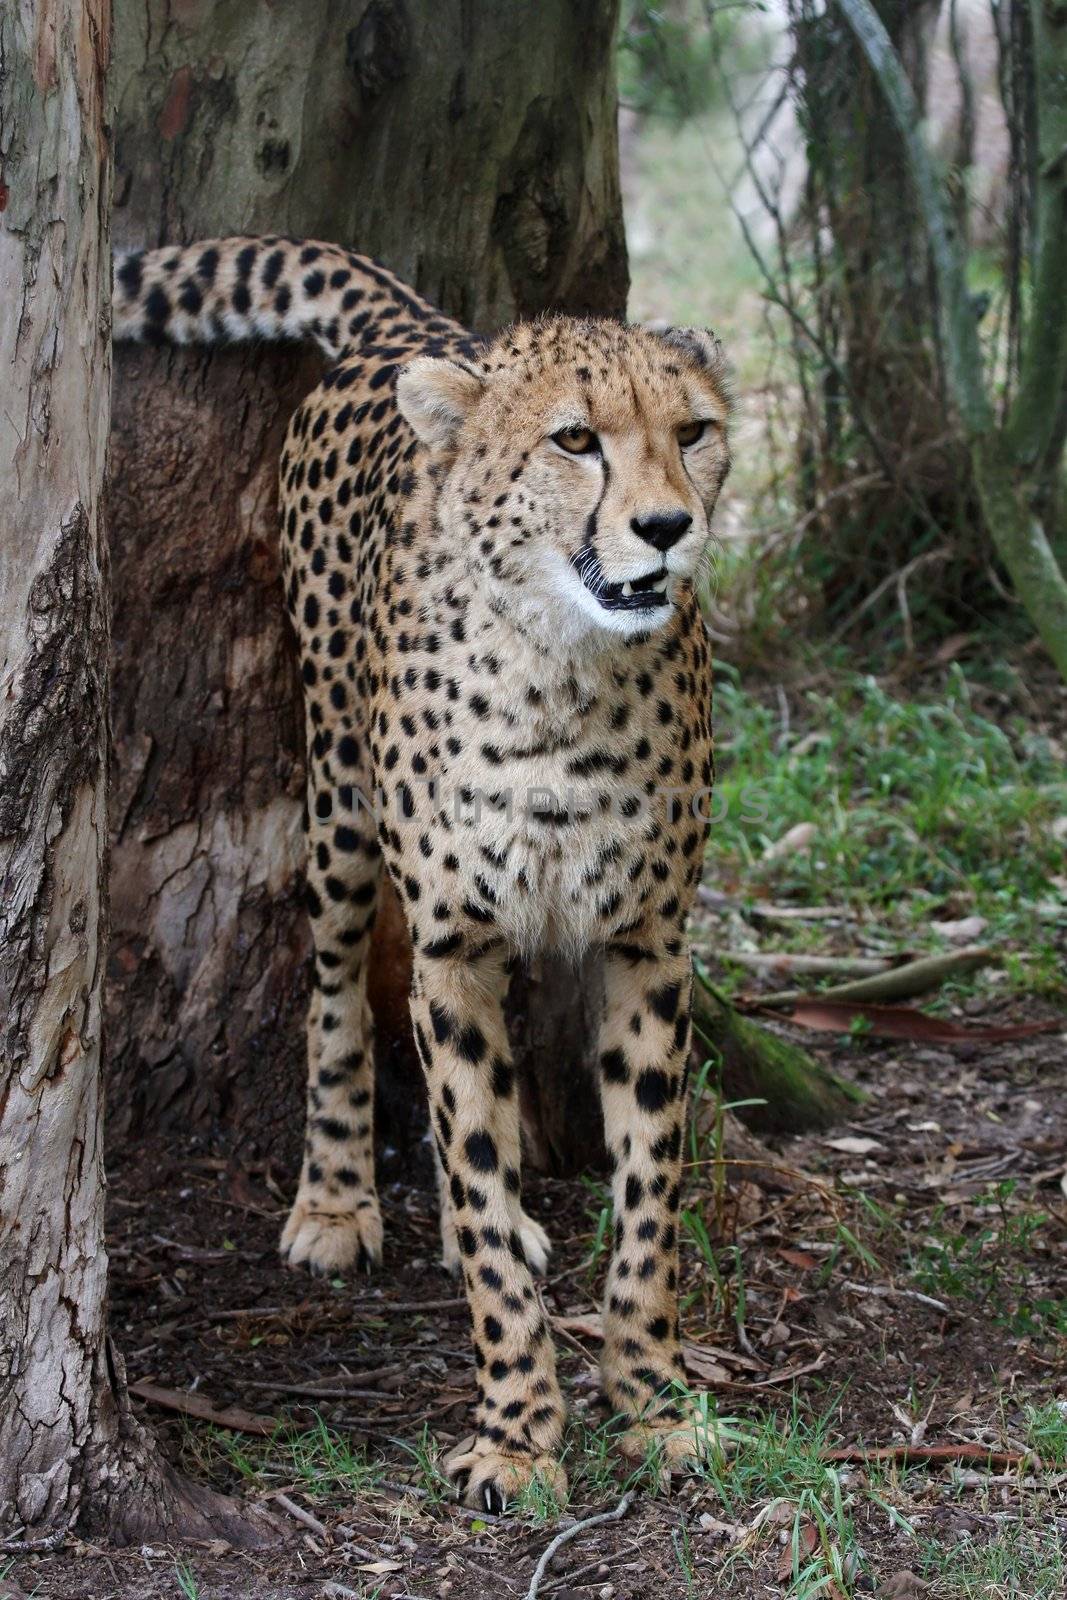 Cheetah wild cat spraying urine onto atree to mark territory